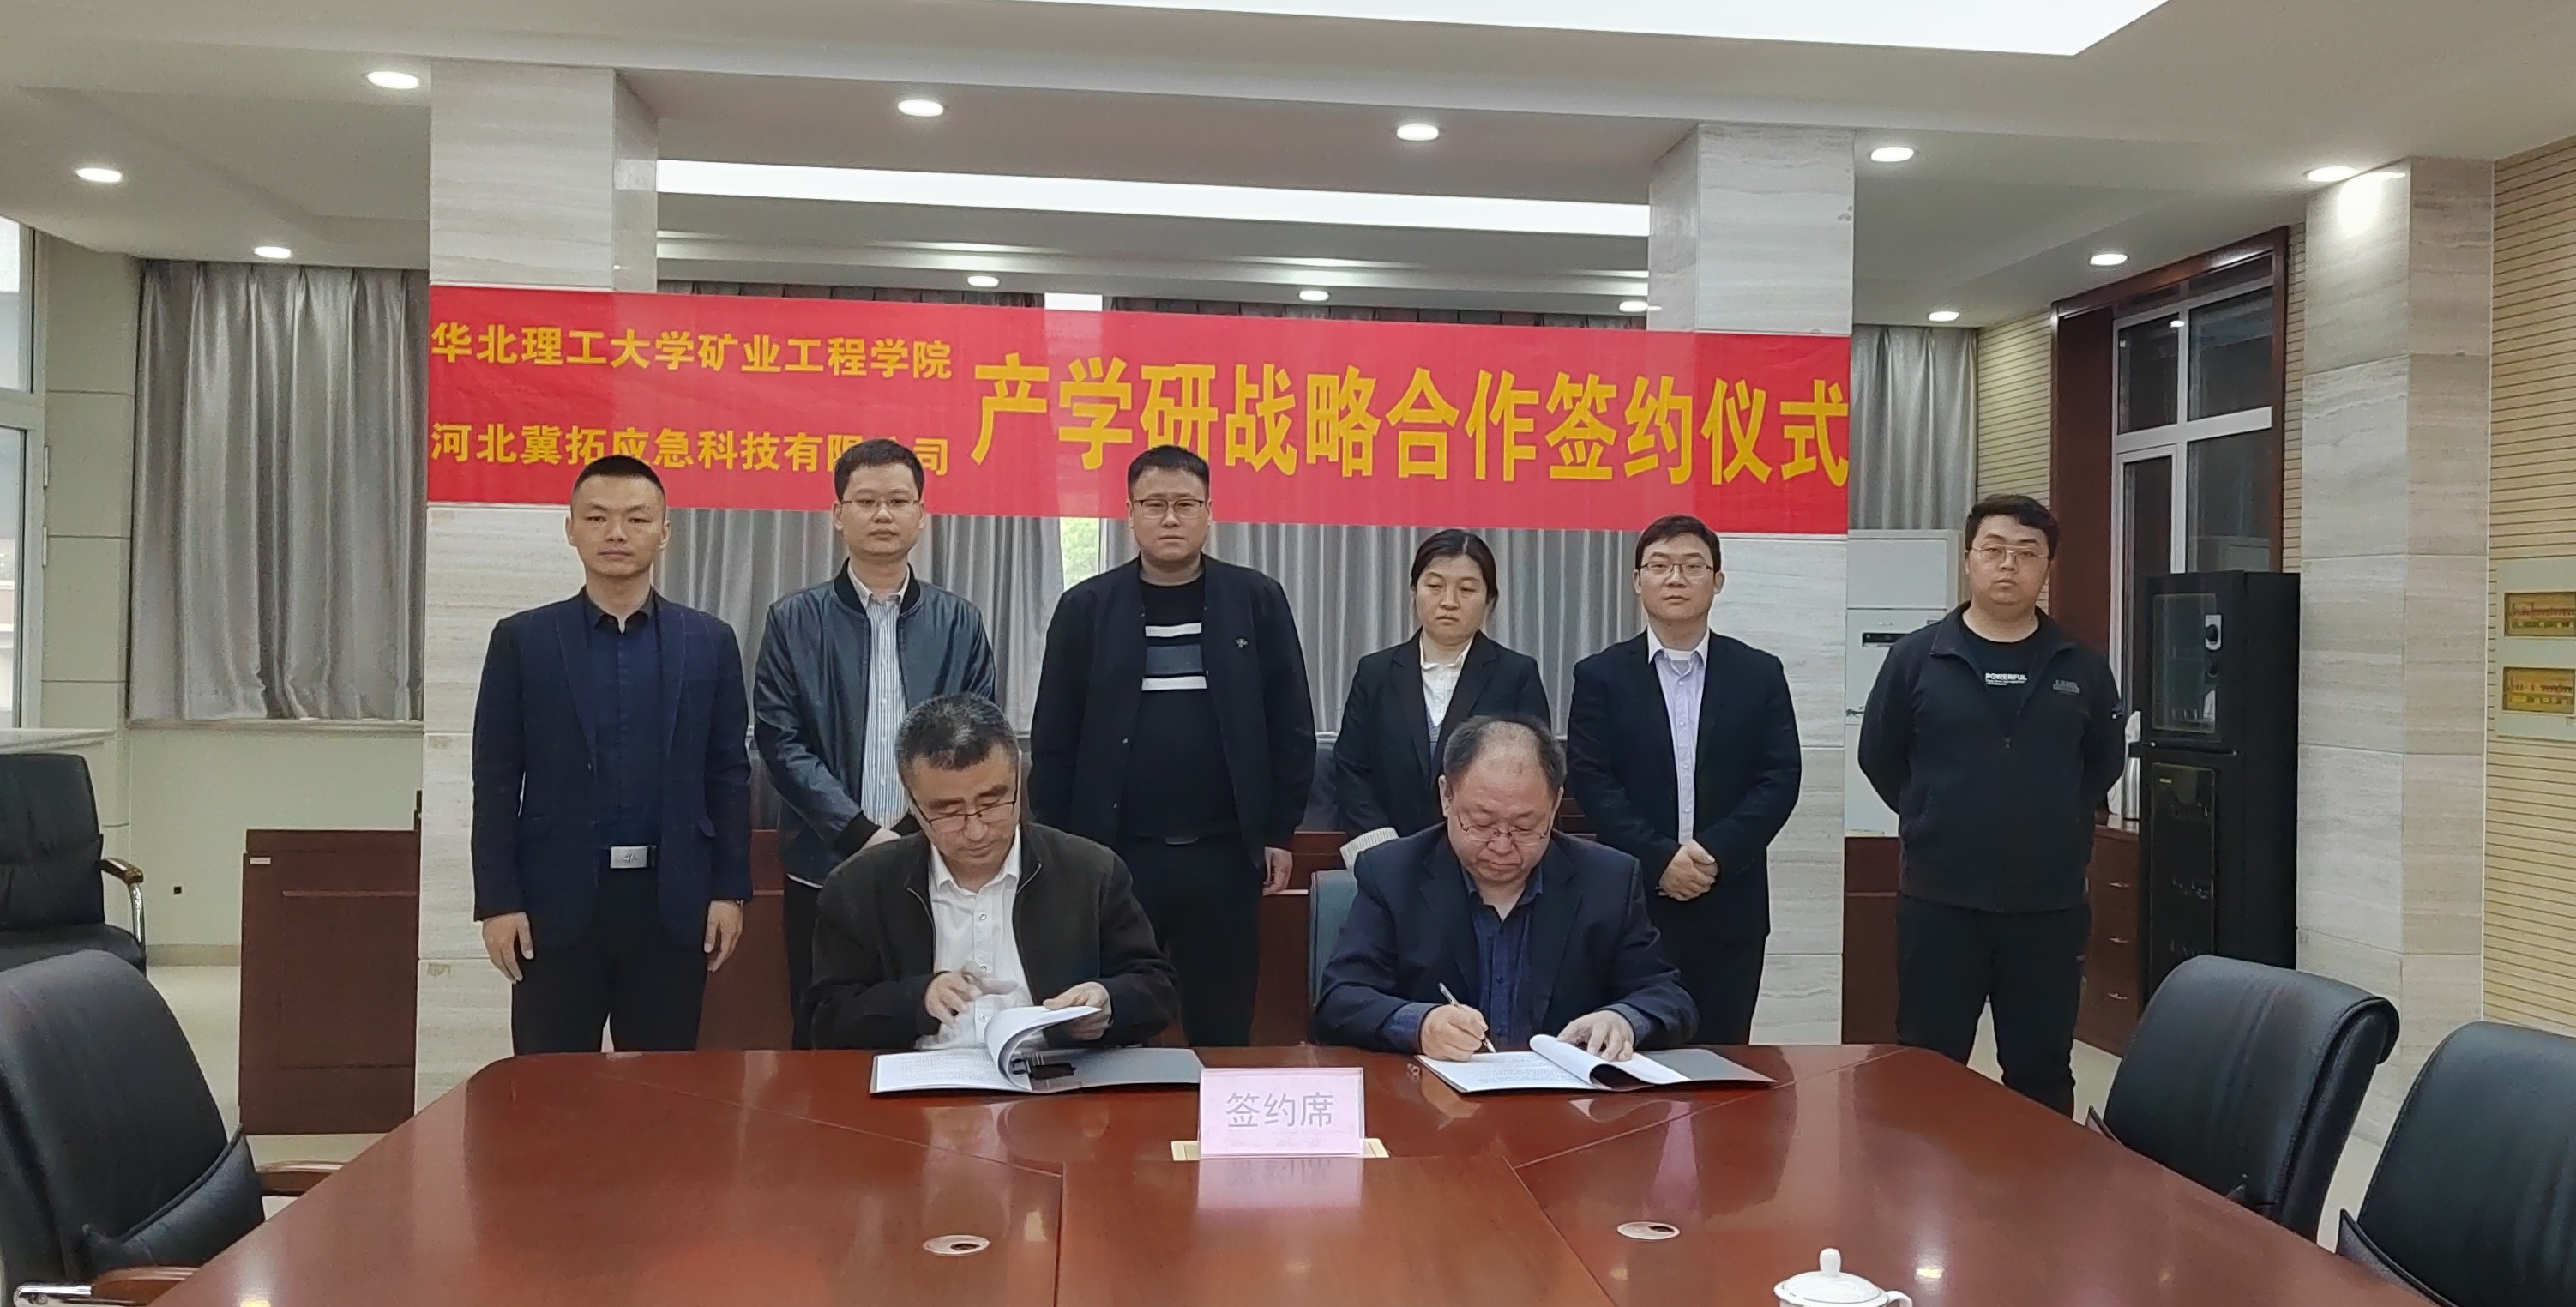 冀拓科技公司与华北理工大学矿业工程学院签署产学研合作协议